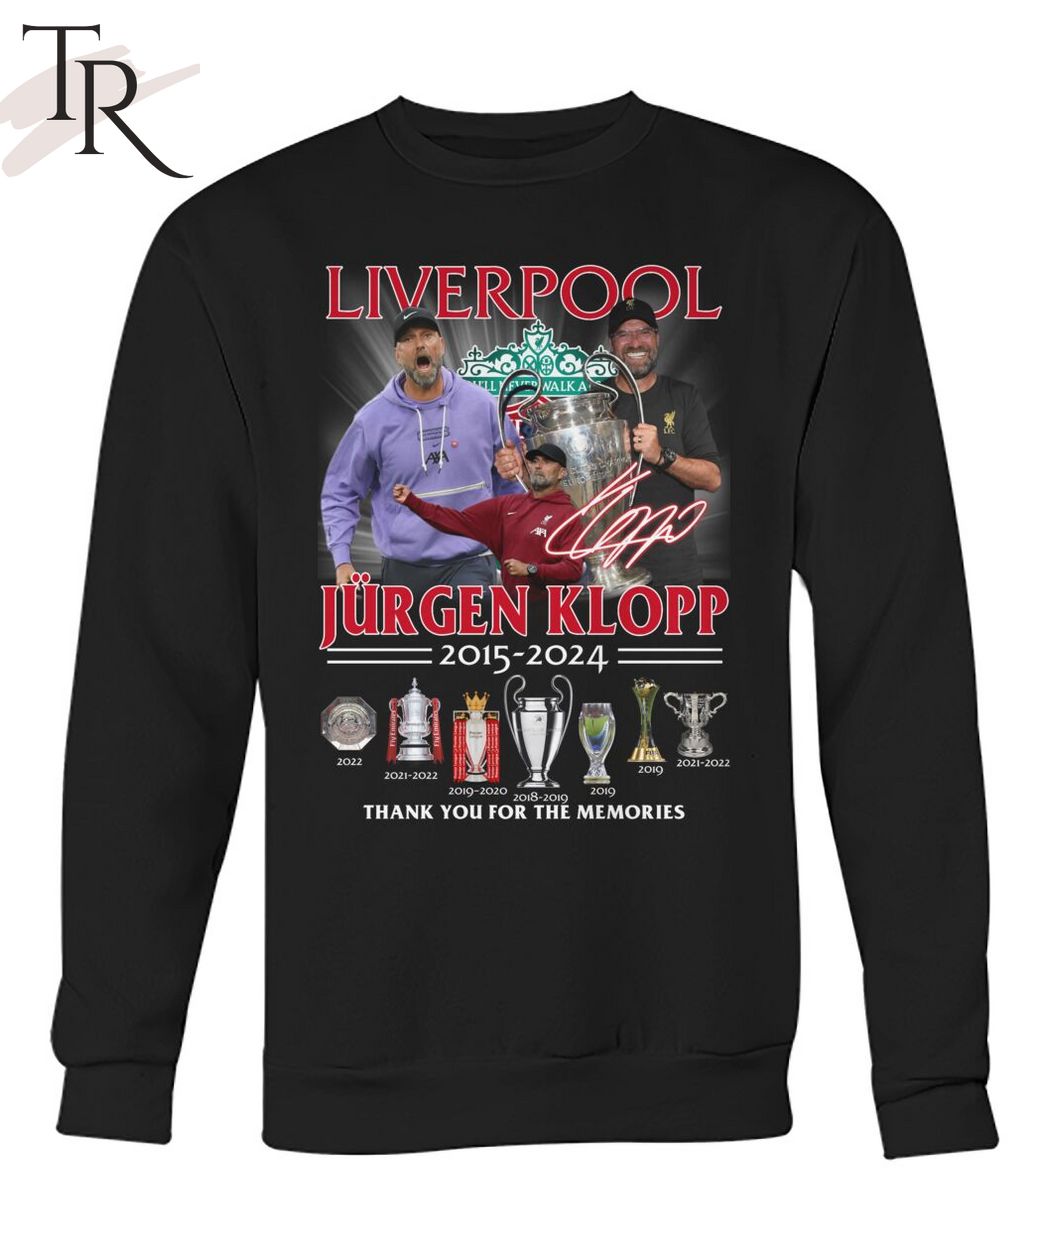 Liverpool Jurgen Klopp 2015 - 2024 Thank You For The Memories T-Shirt